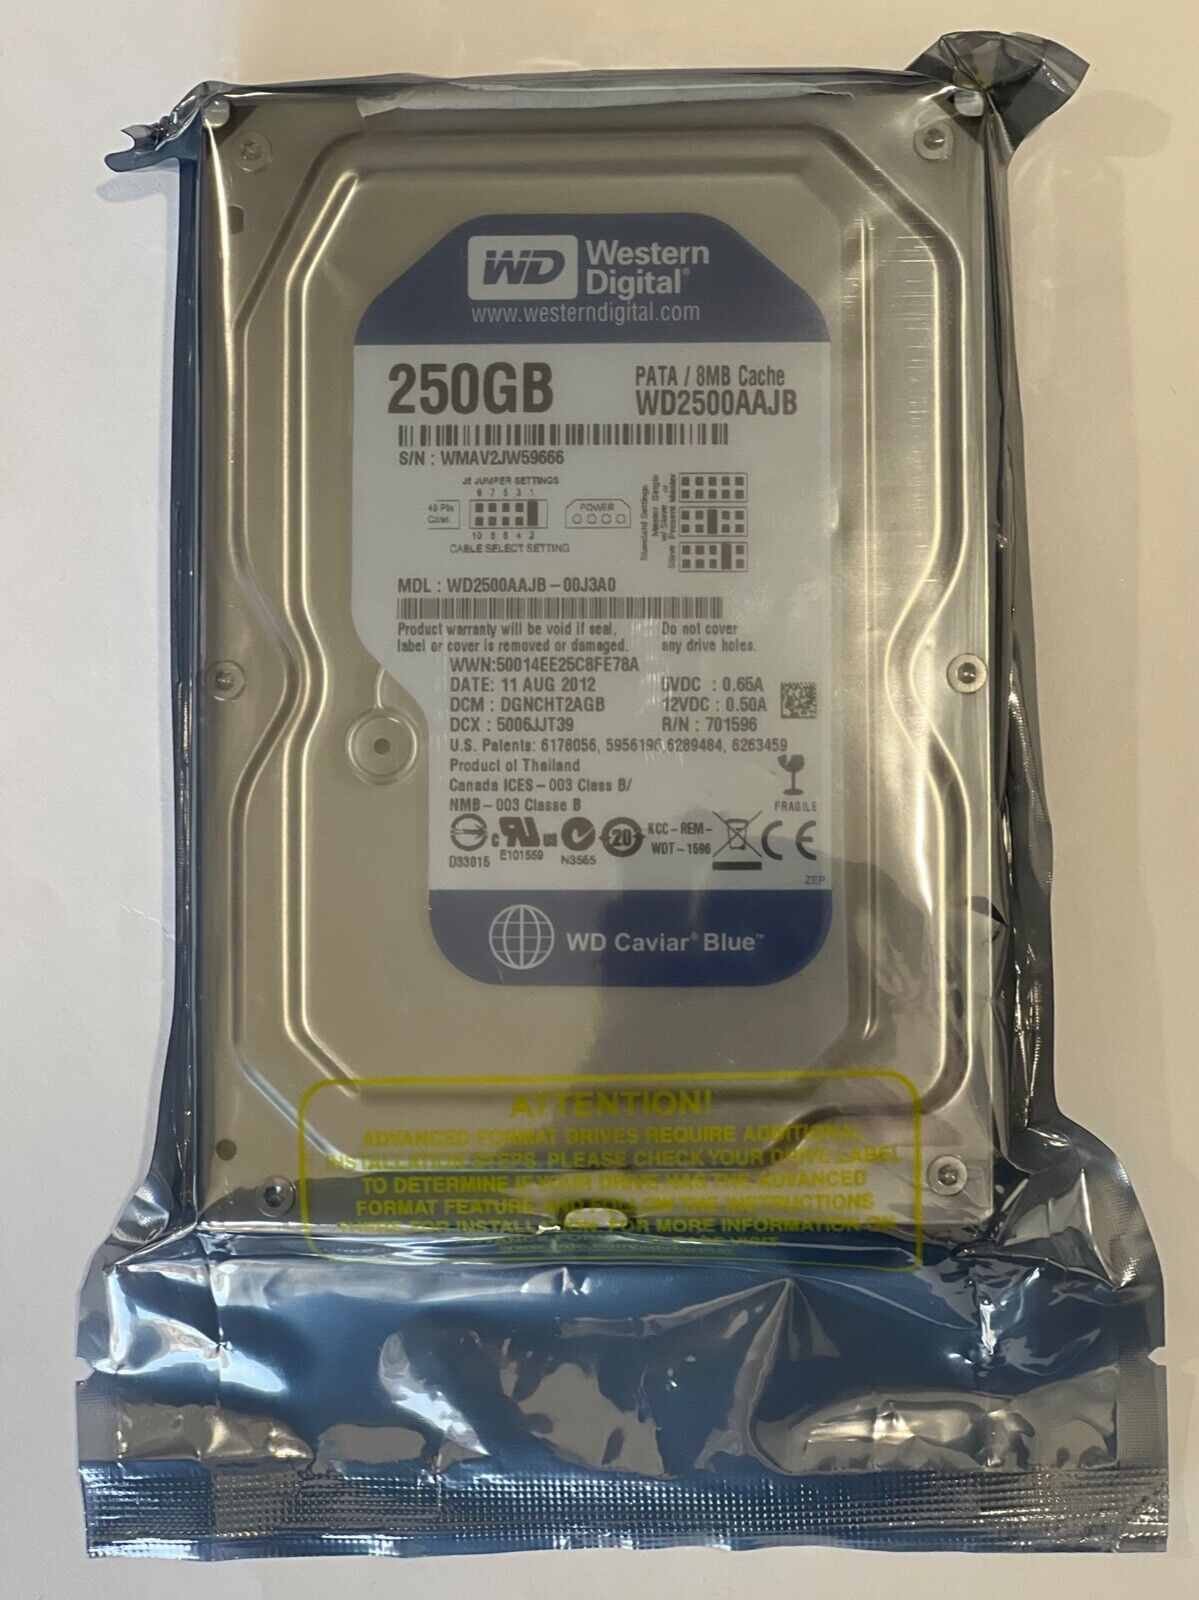 Western Digital Caviar Blue WD2500AAJB PATA 250 GB 3.5in Internal IDE Hard Drive